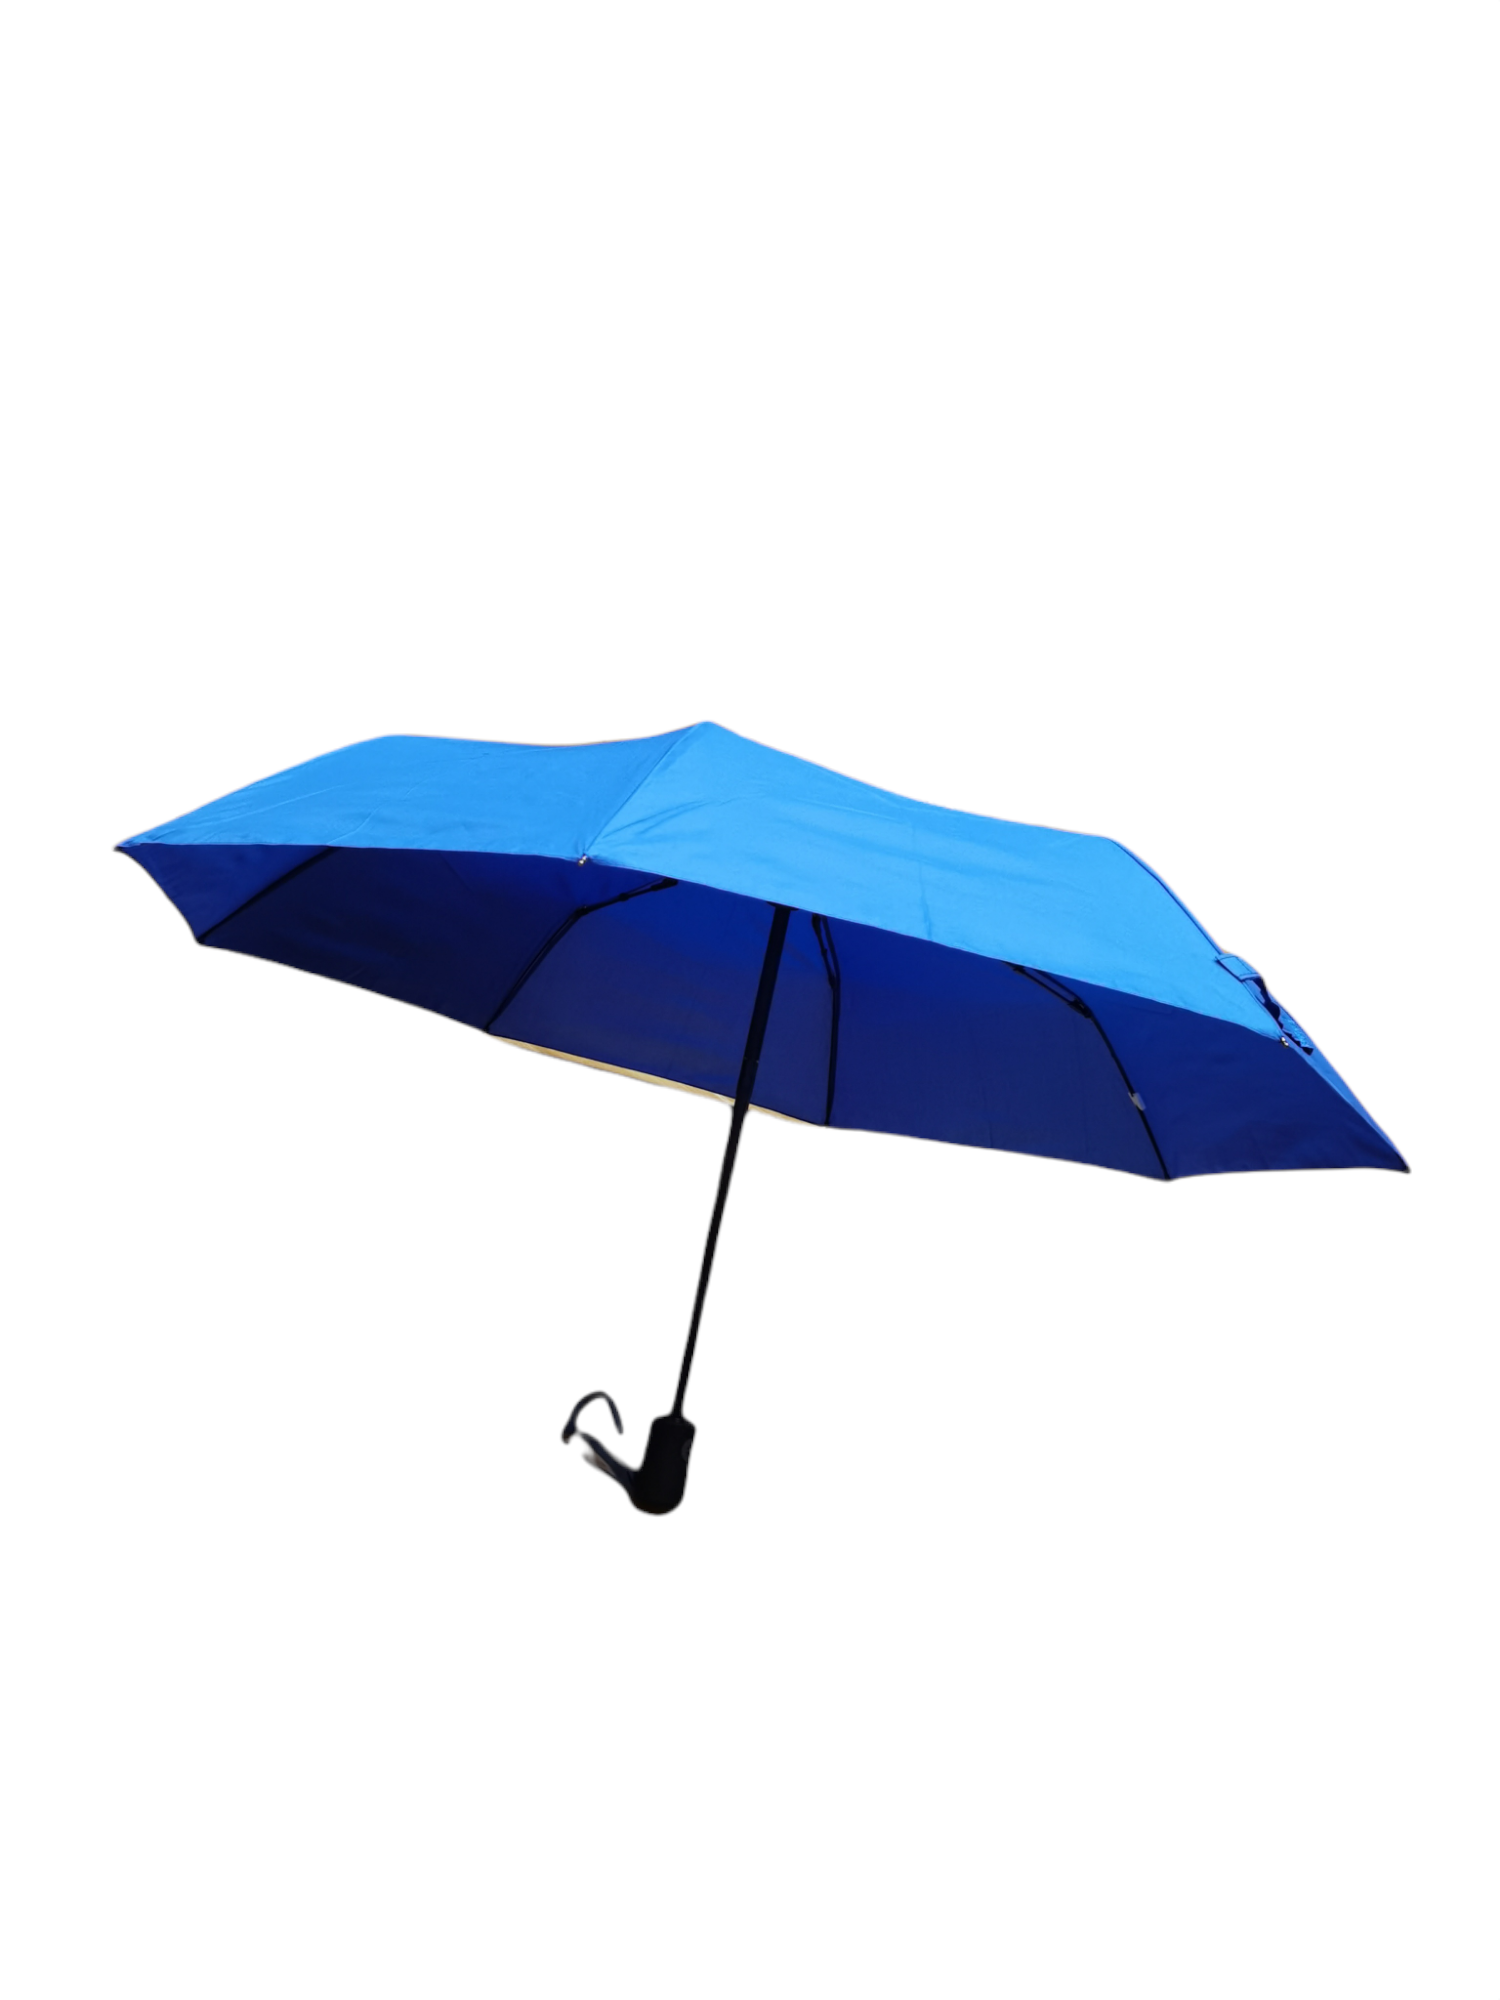 Parapluie dépliant automatique double (x12) #7916